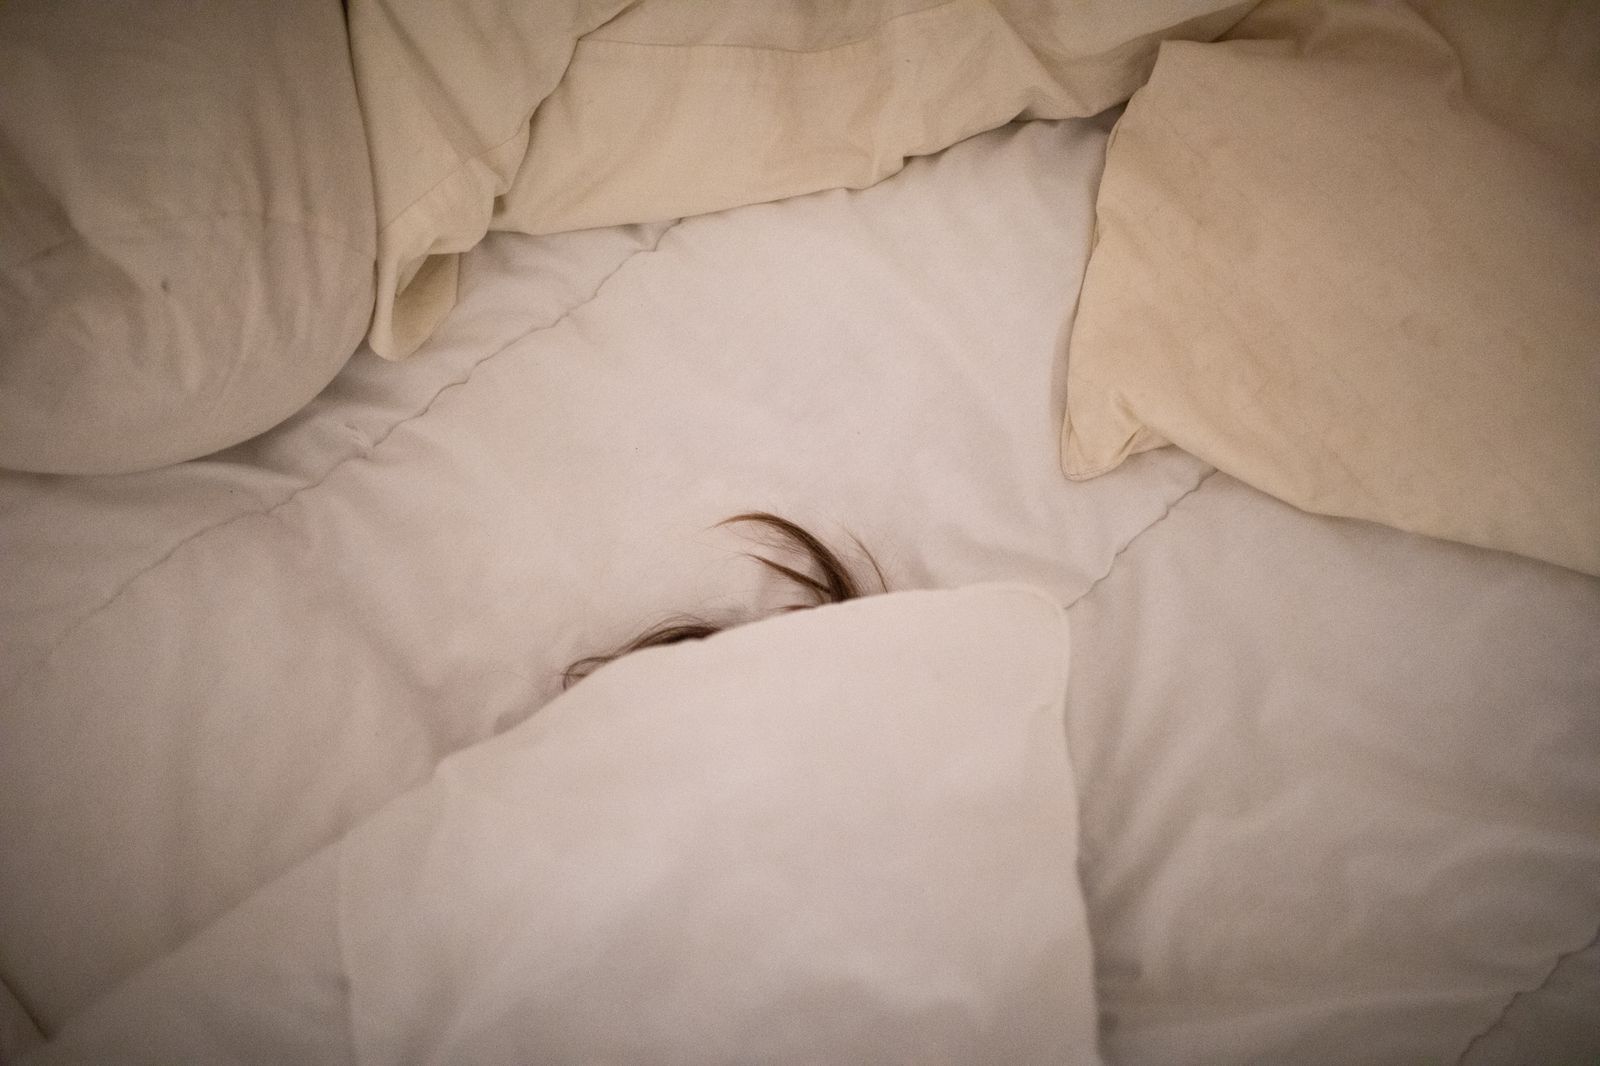 © Sofia Aldinio - Alfonso Boyd, hiding under the covers.